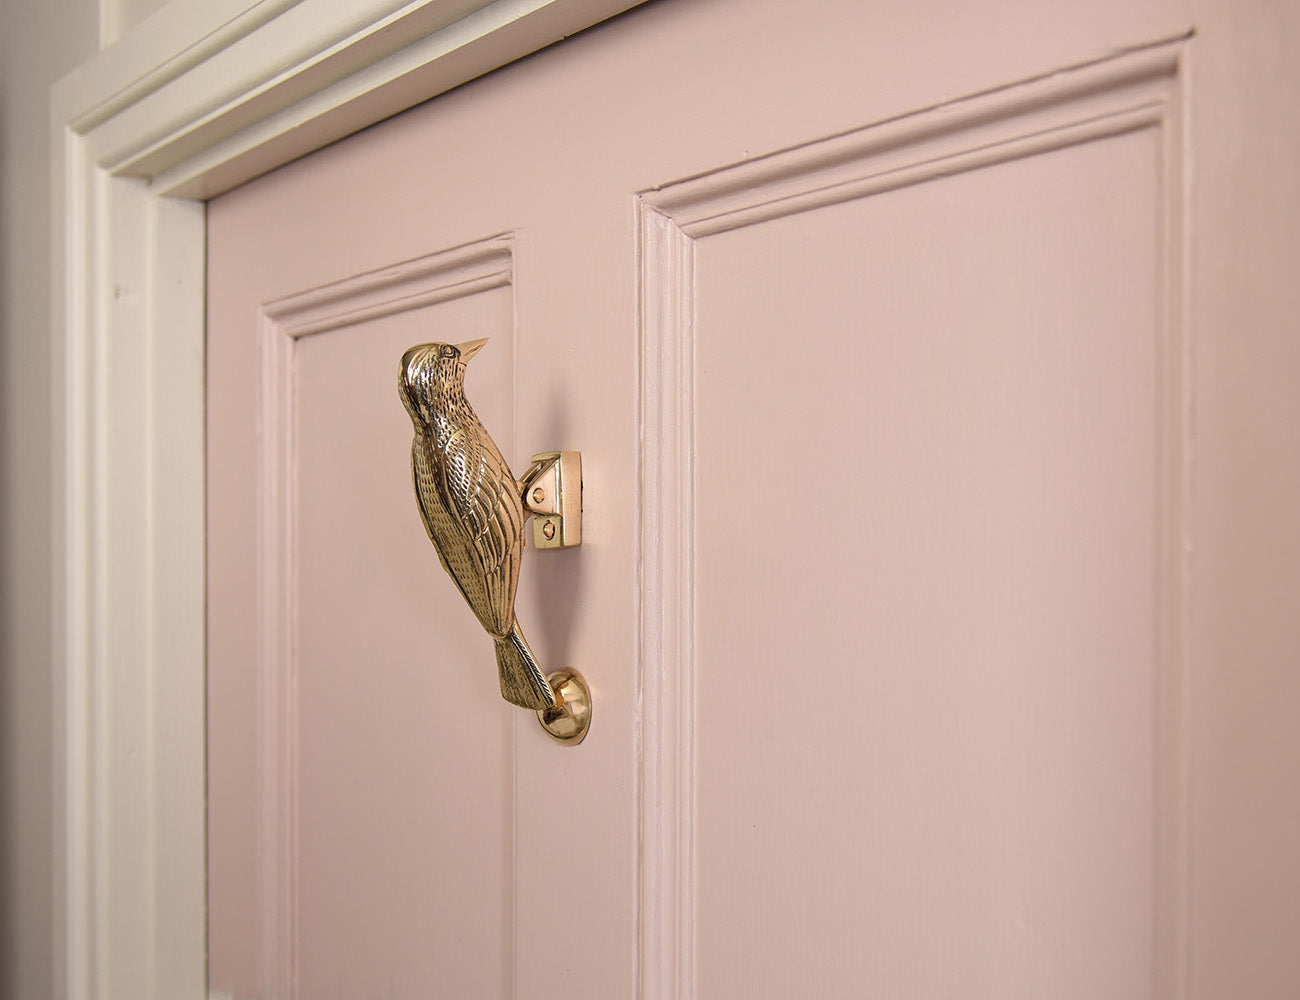 Wood pecker door knocker on pink door